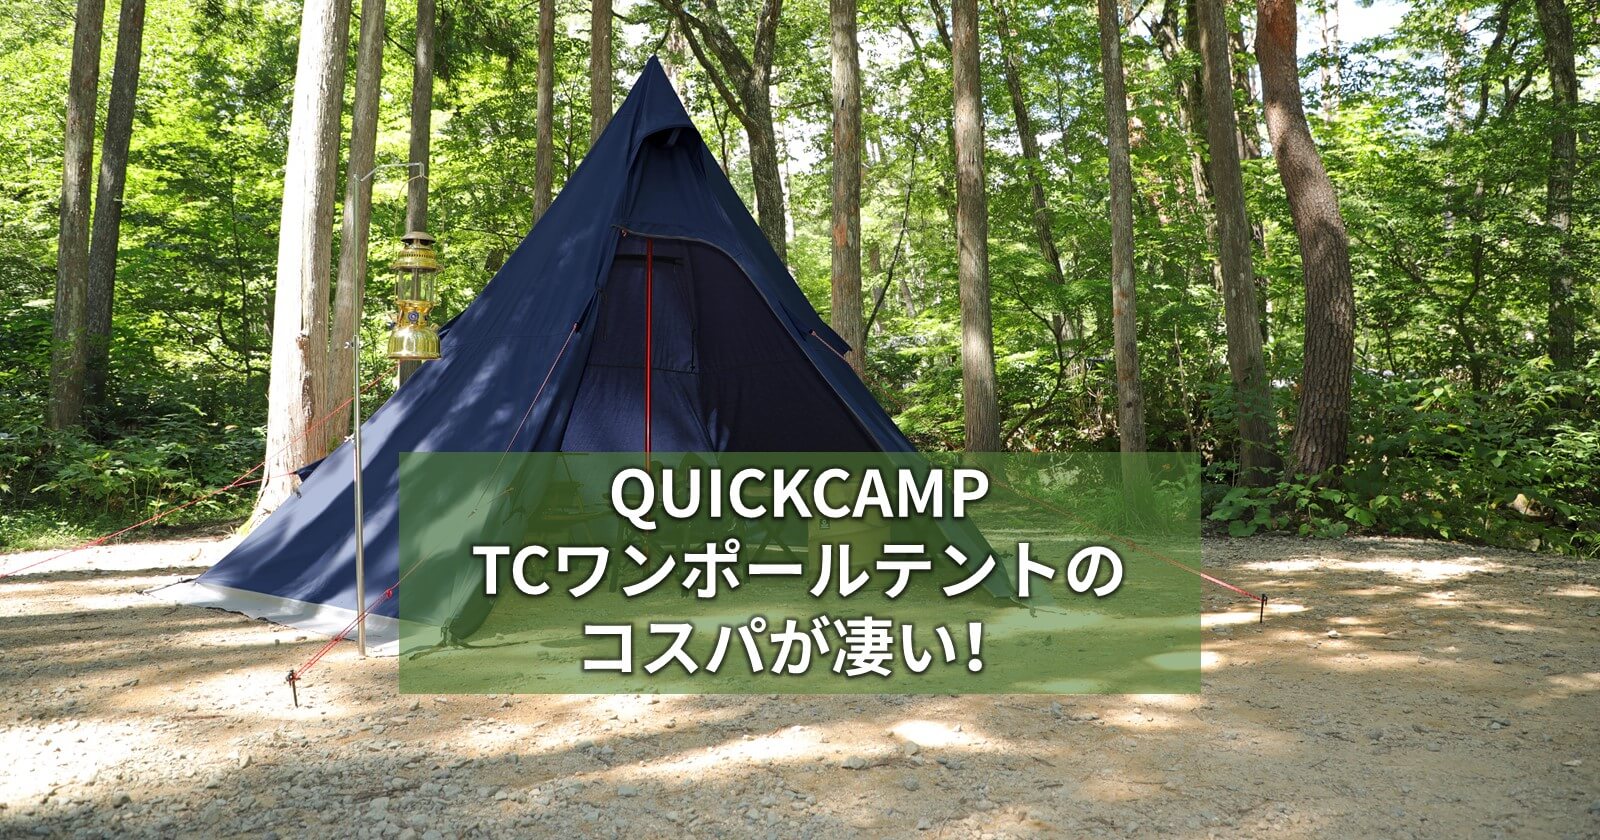 クイックキャンプ TCワンポールテント グレー & 二股化パーツ - wakasa-g.co.jp